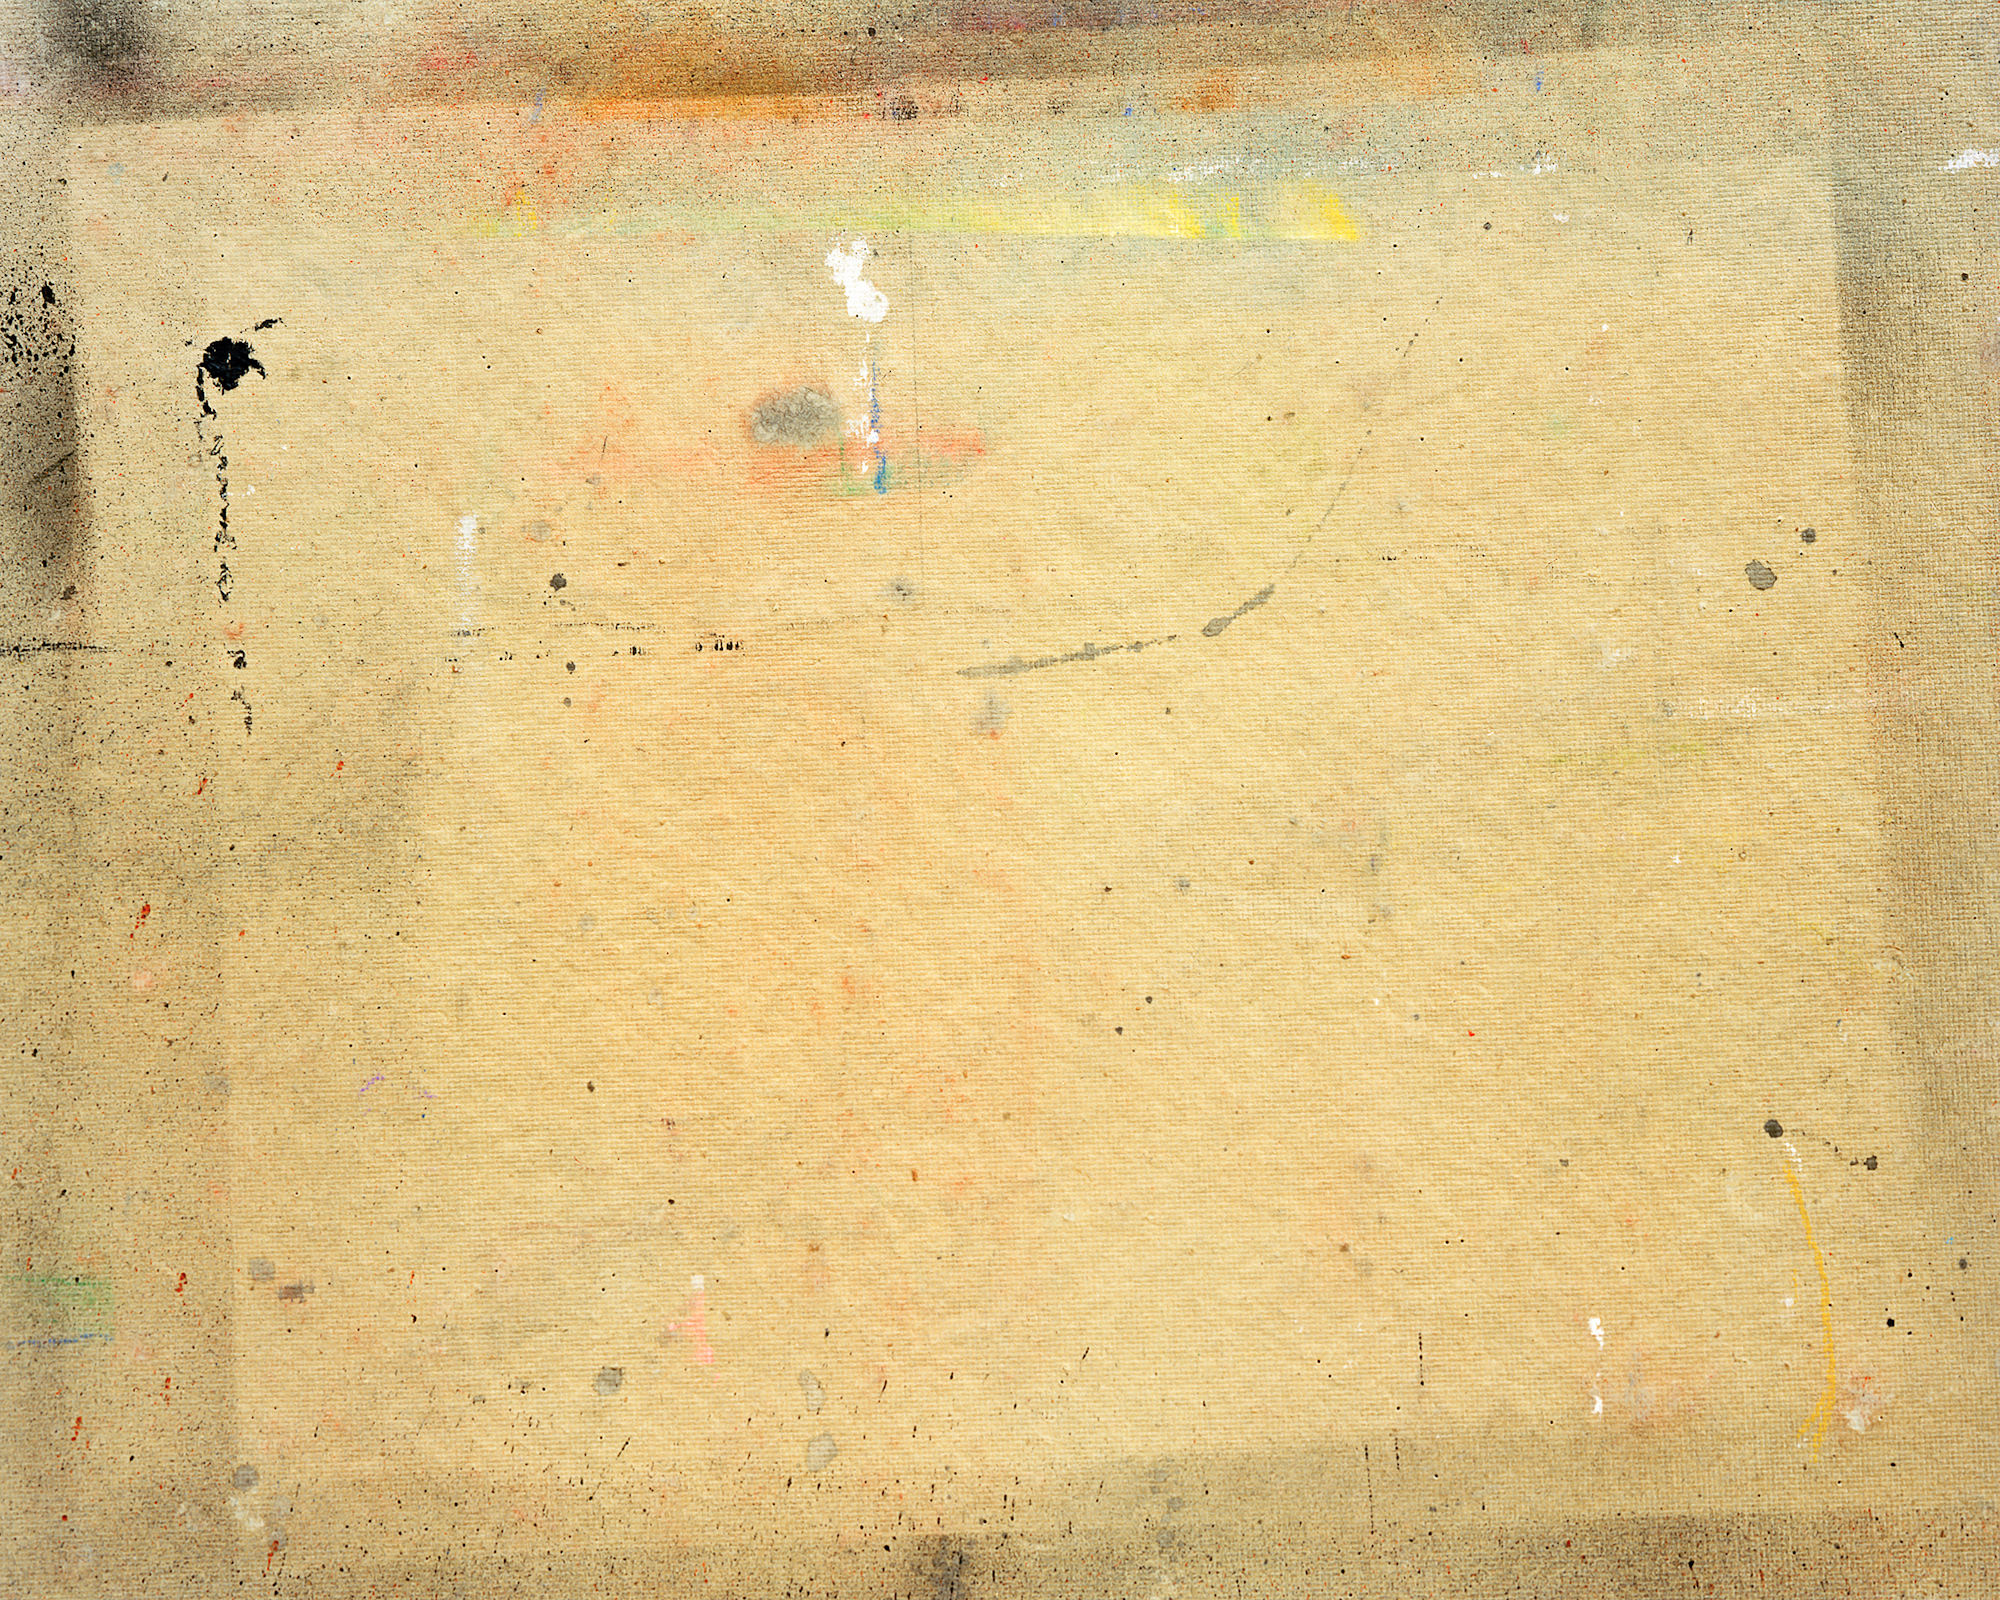   Studio-1, &nbsp;archival pigment print,&nbsp;11 x 14 inches, 2013 